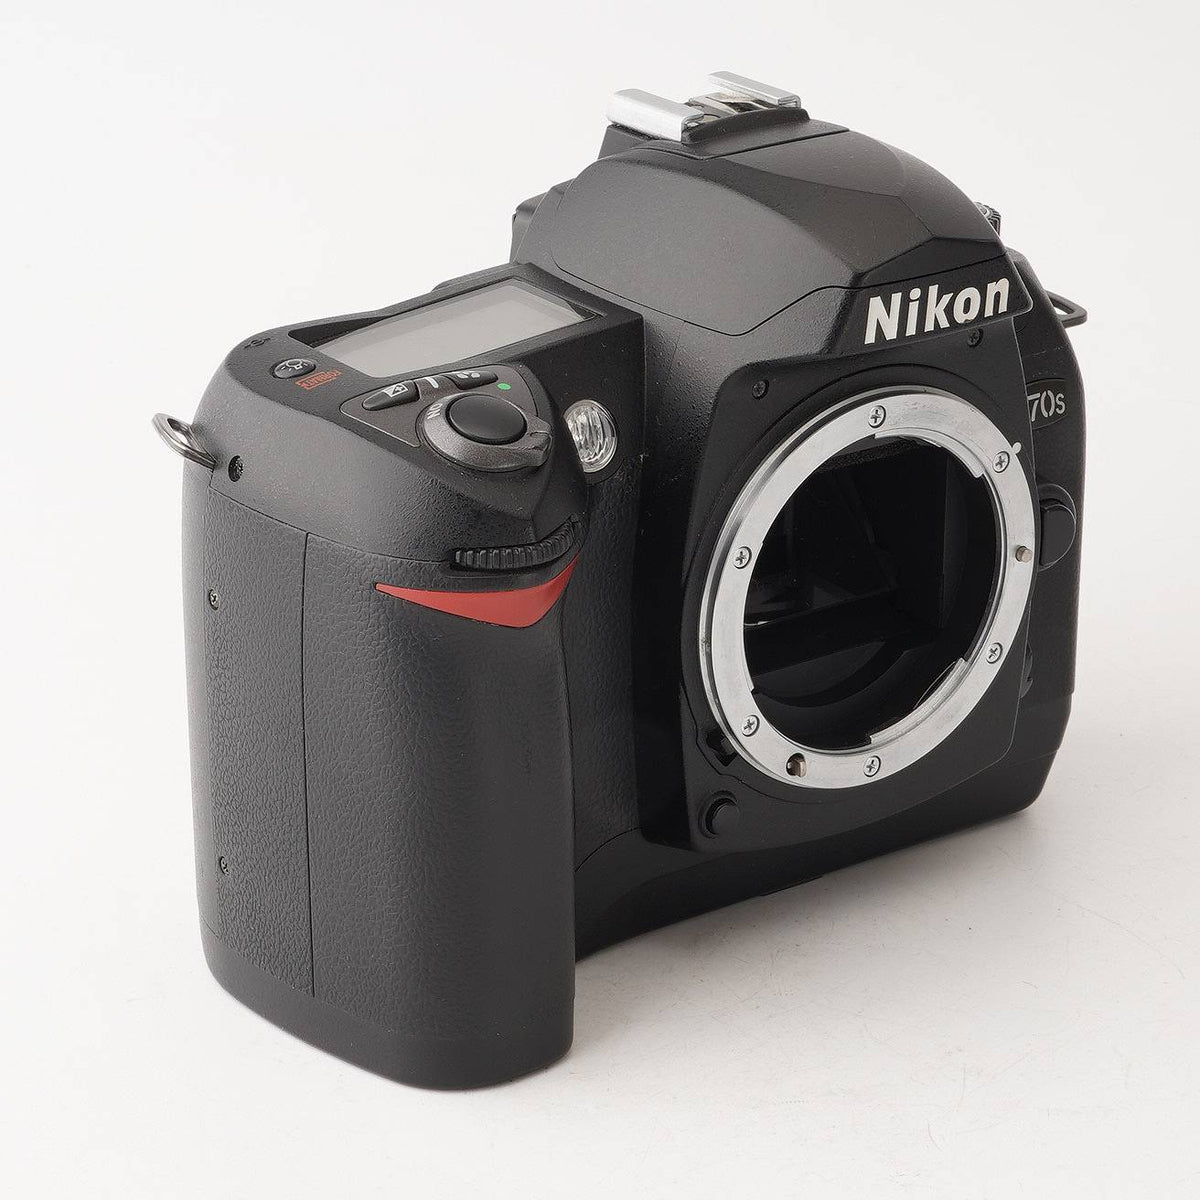 ニコン Nikon D70s デジタル一眼レフカメラ – Natural Camera